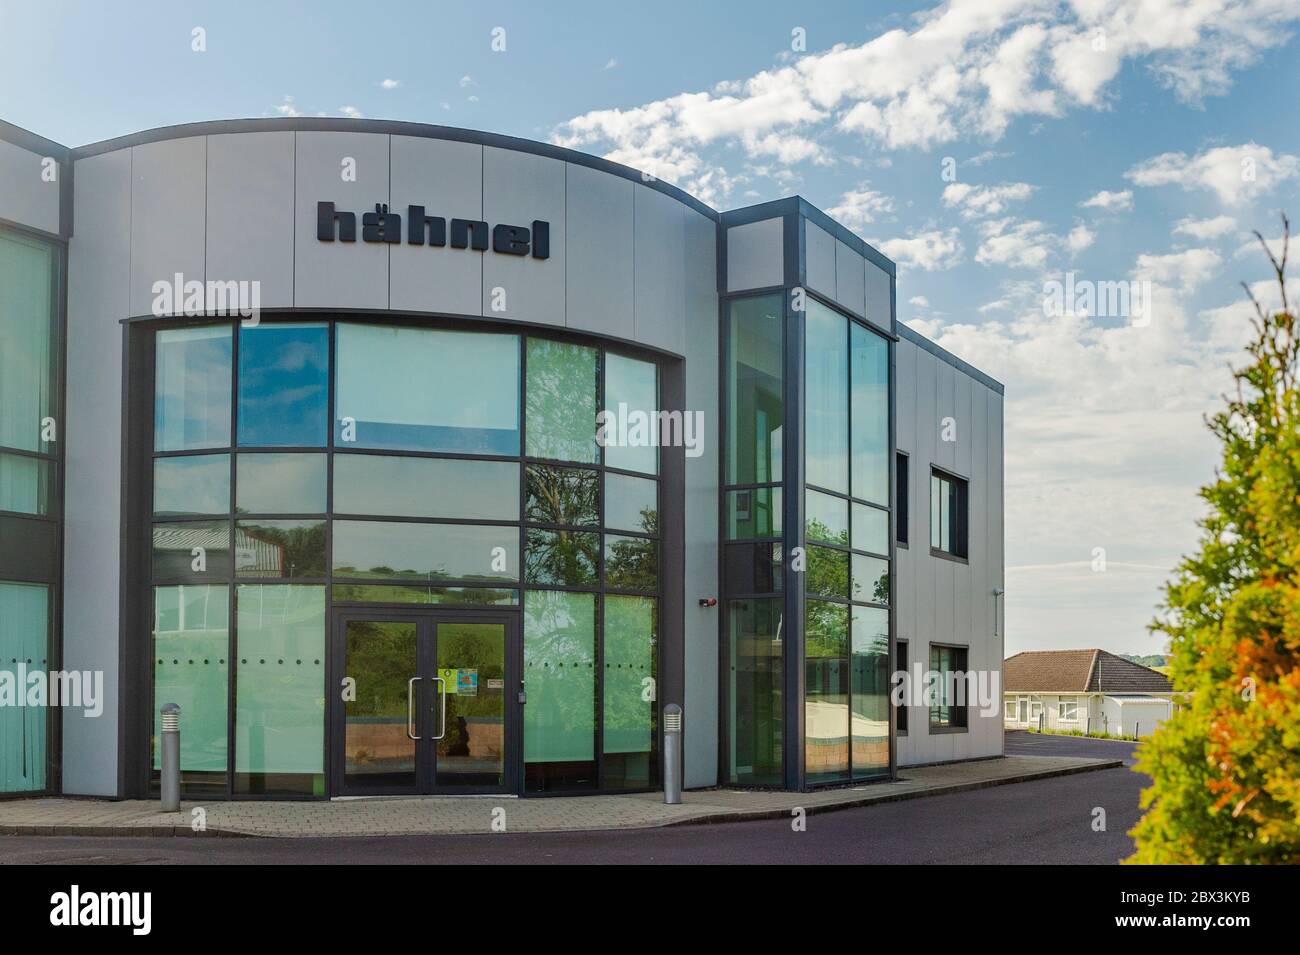 Büros und Lager von Hahnel Industries Ltd, Fotozubehör Unternehmen, Bandon, West Cork, Irland Stockfoto